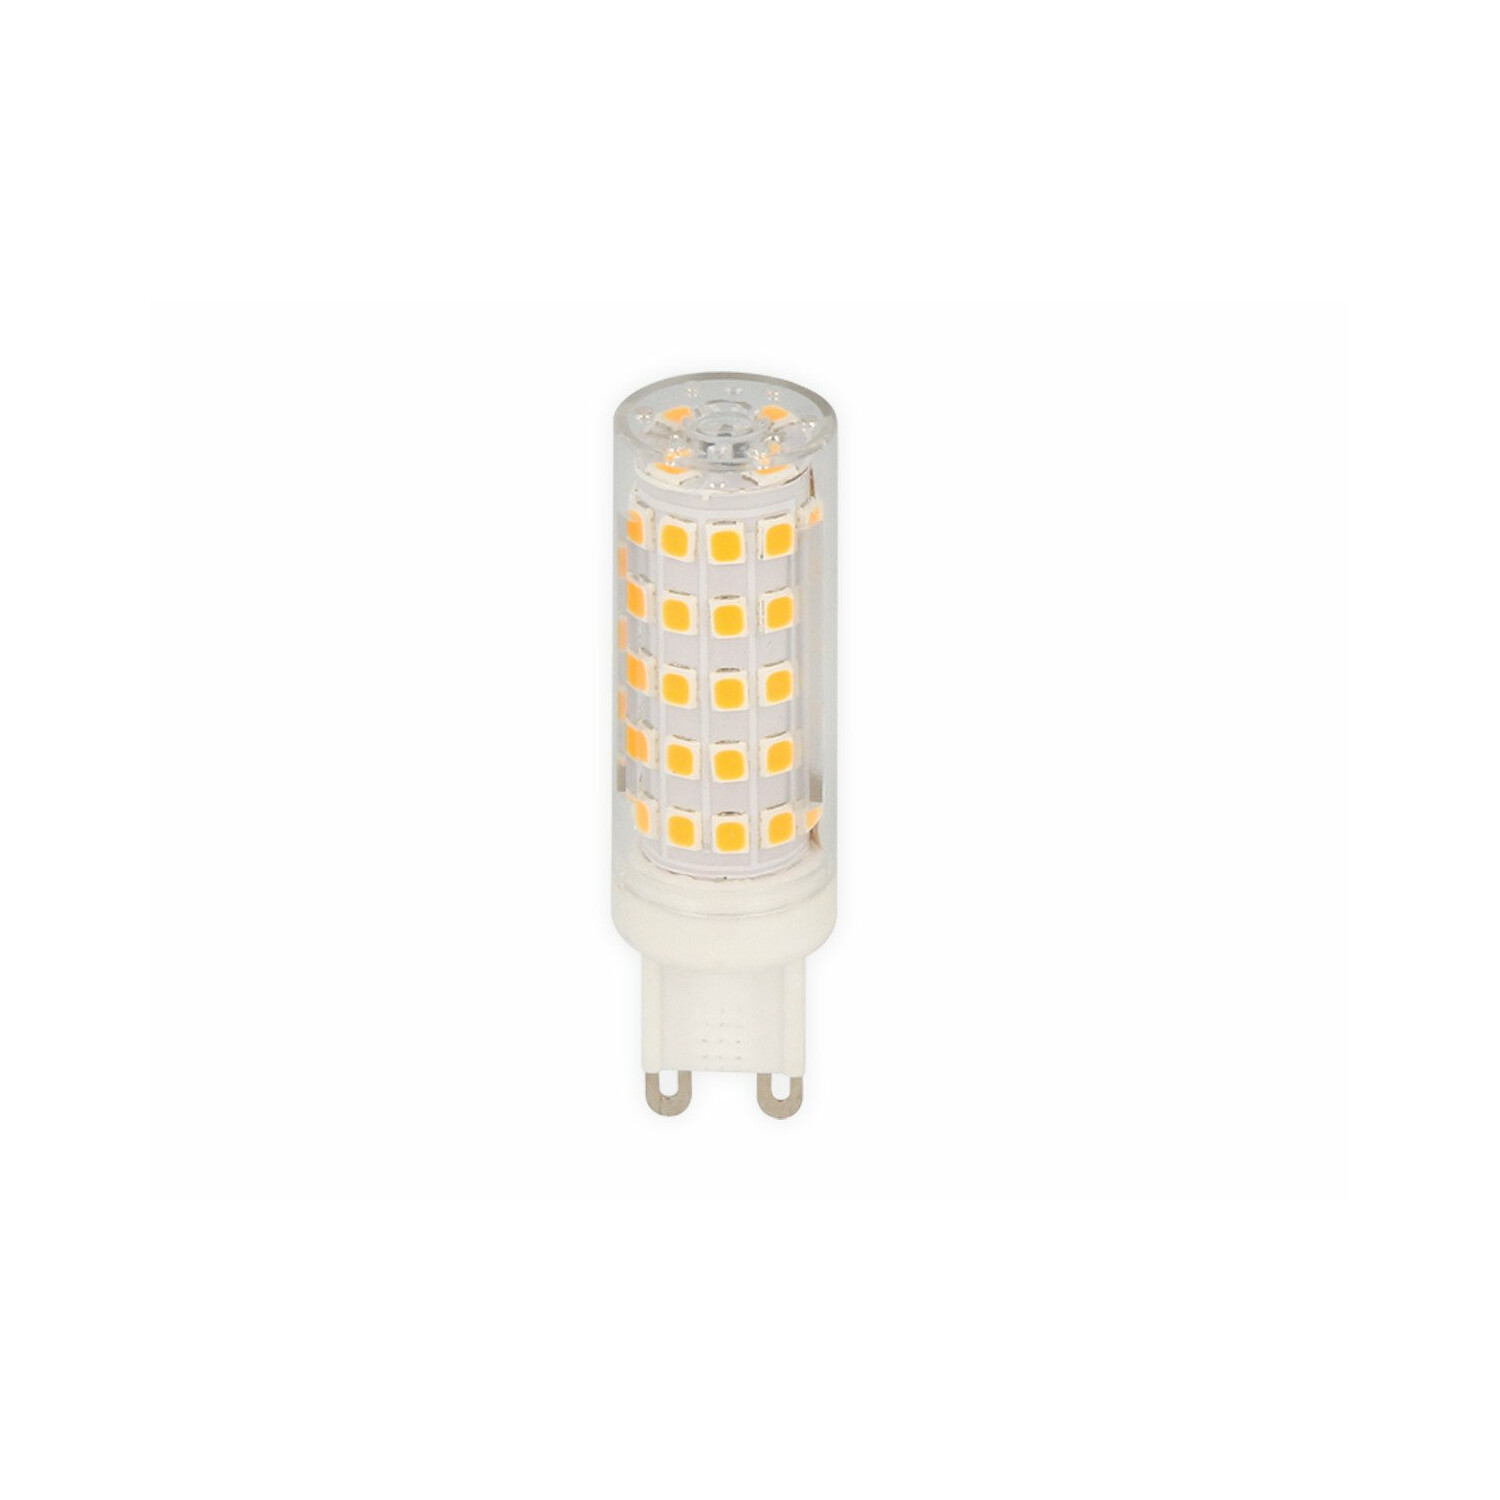 LED 8W Leuchtmittel Pack 750 LINE Lumen Neutralweiß 6er LED G9 LED